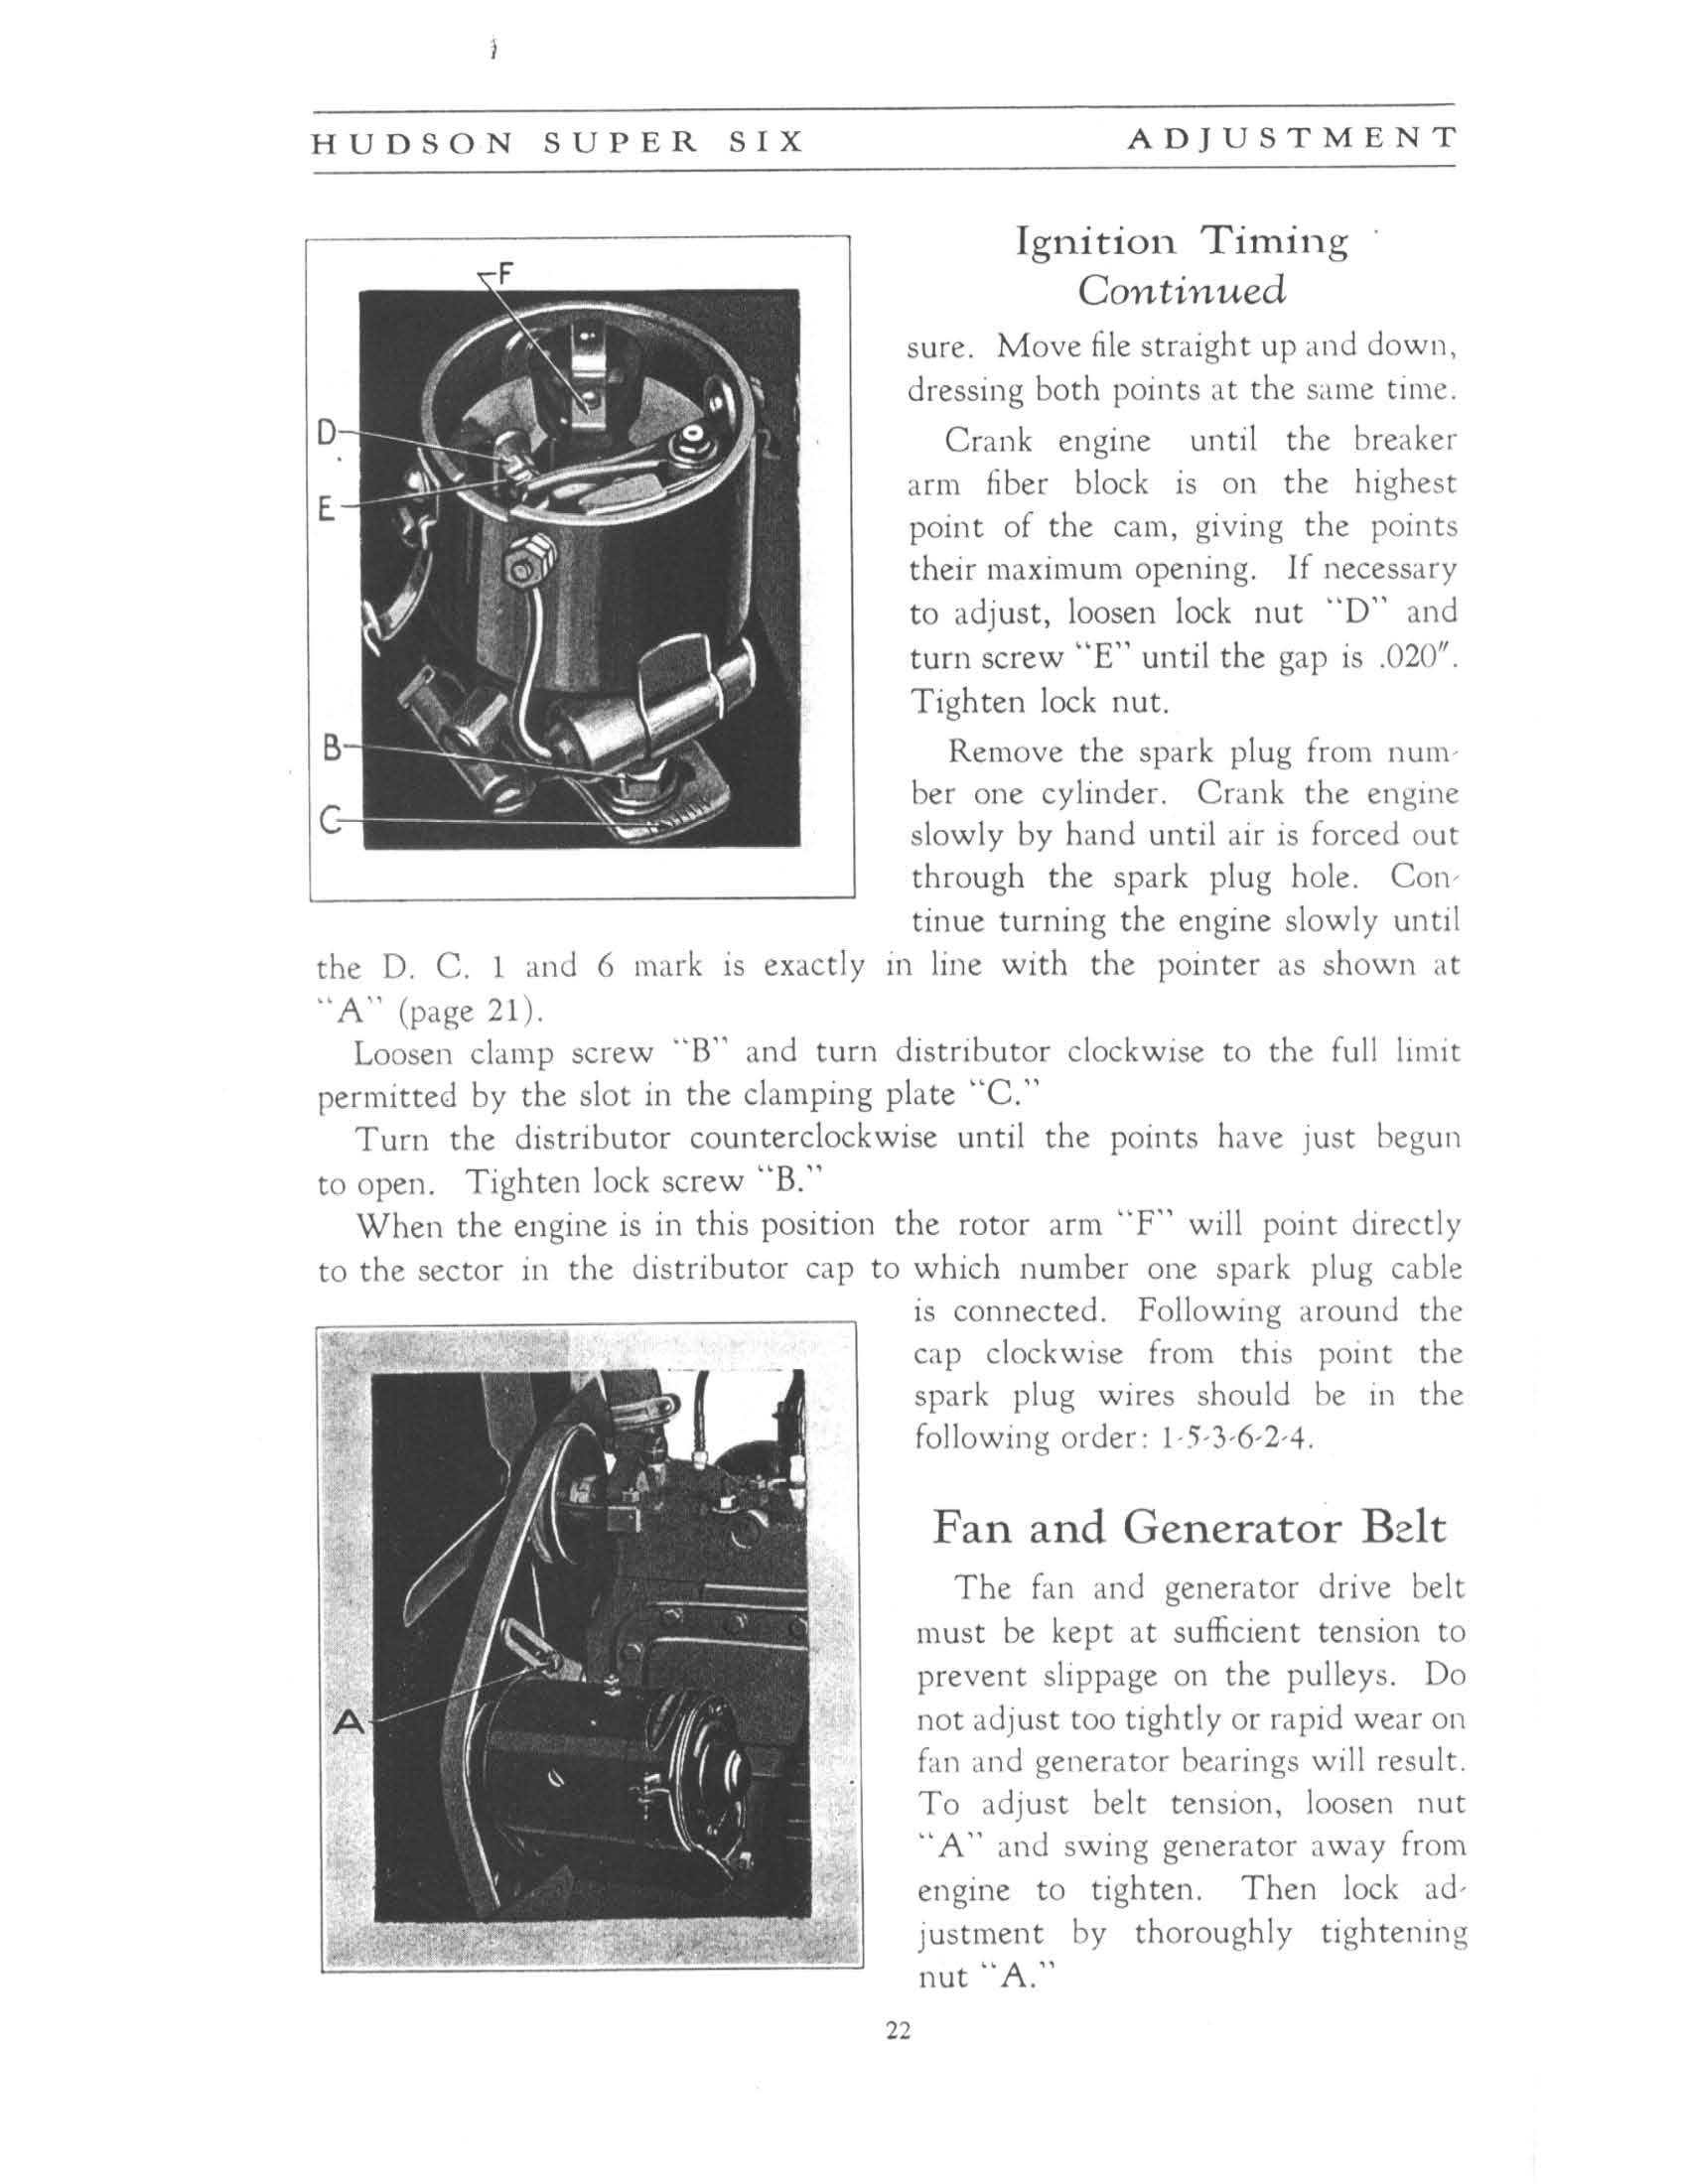 1933 Hudson Super-Six Manual-21